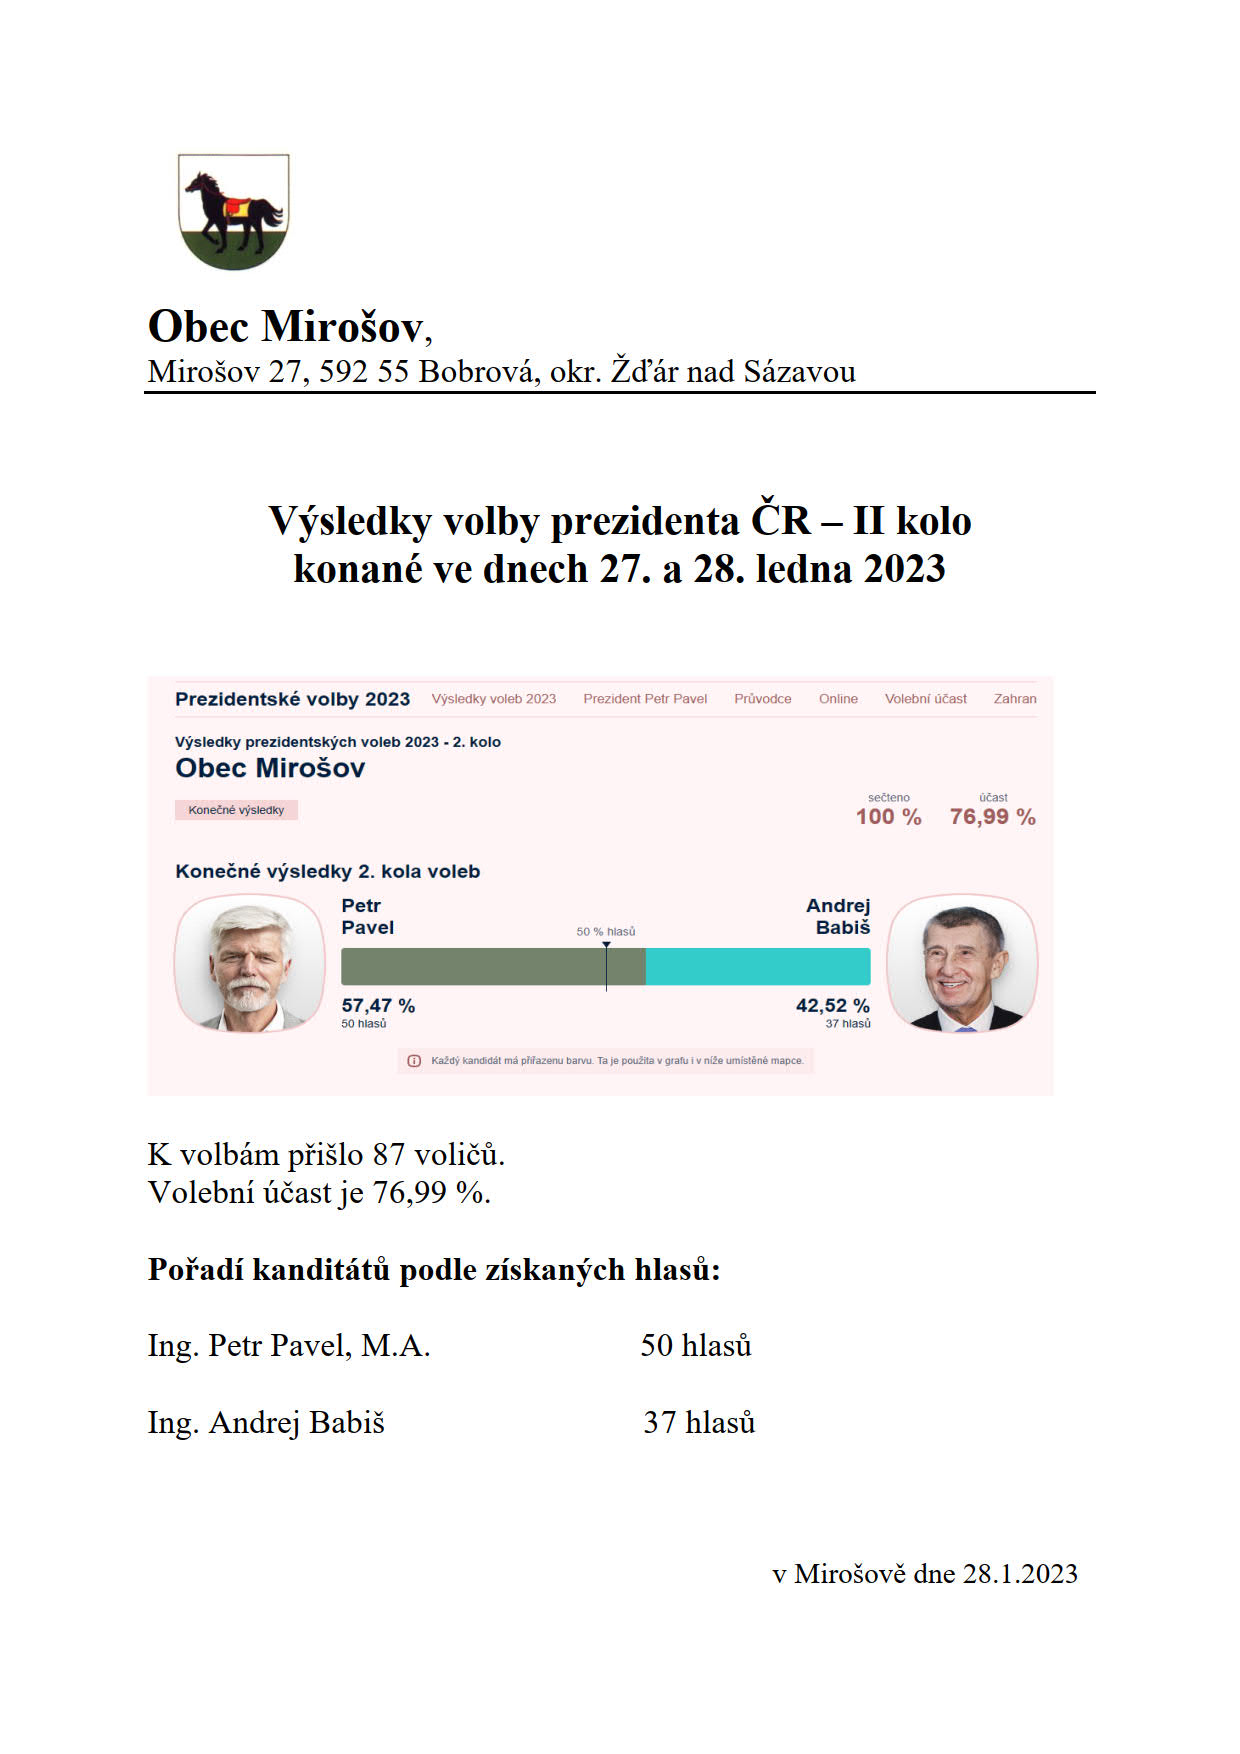 Výsledky voby prezidenta ČR 2023 - II kolo